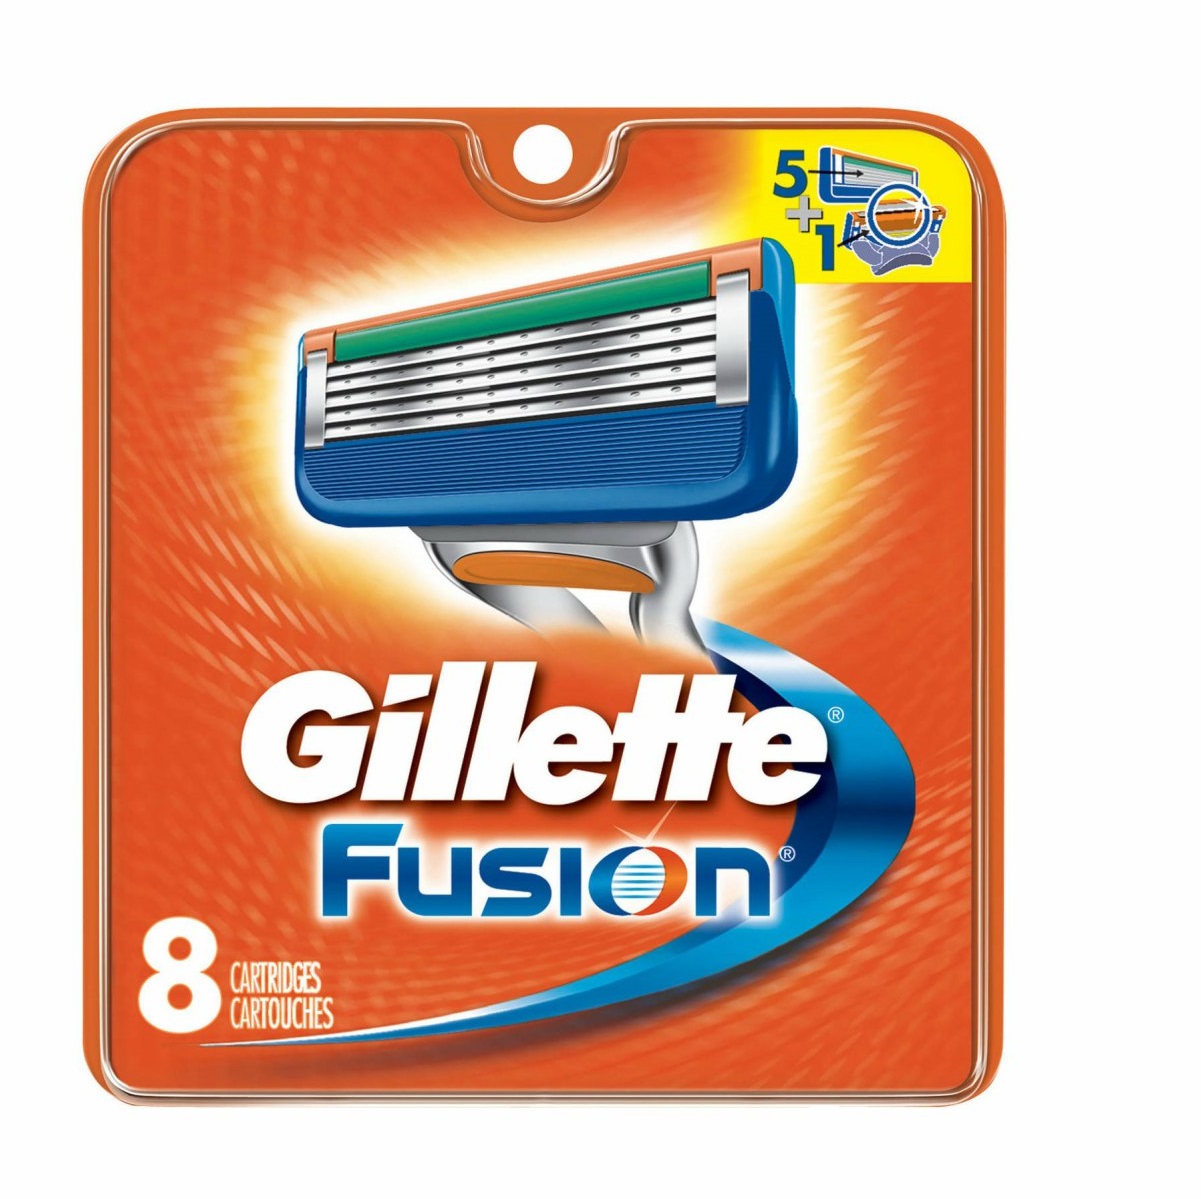 Сменные кассеты для станка Gillette Fusion 8шт сменные кассеты для мужской бритвы gillette fusion5 power с 5 лезвиями c точным триммером для труднодоступных мест для гладкого бритья надолго 6 шт